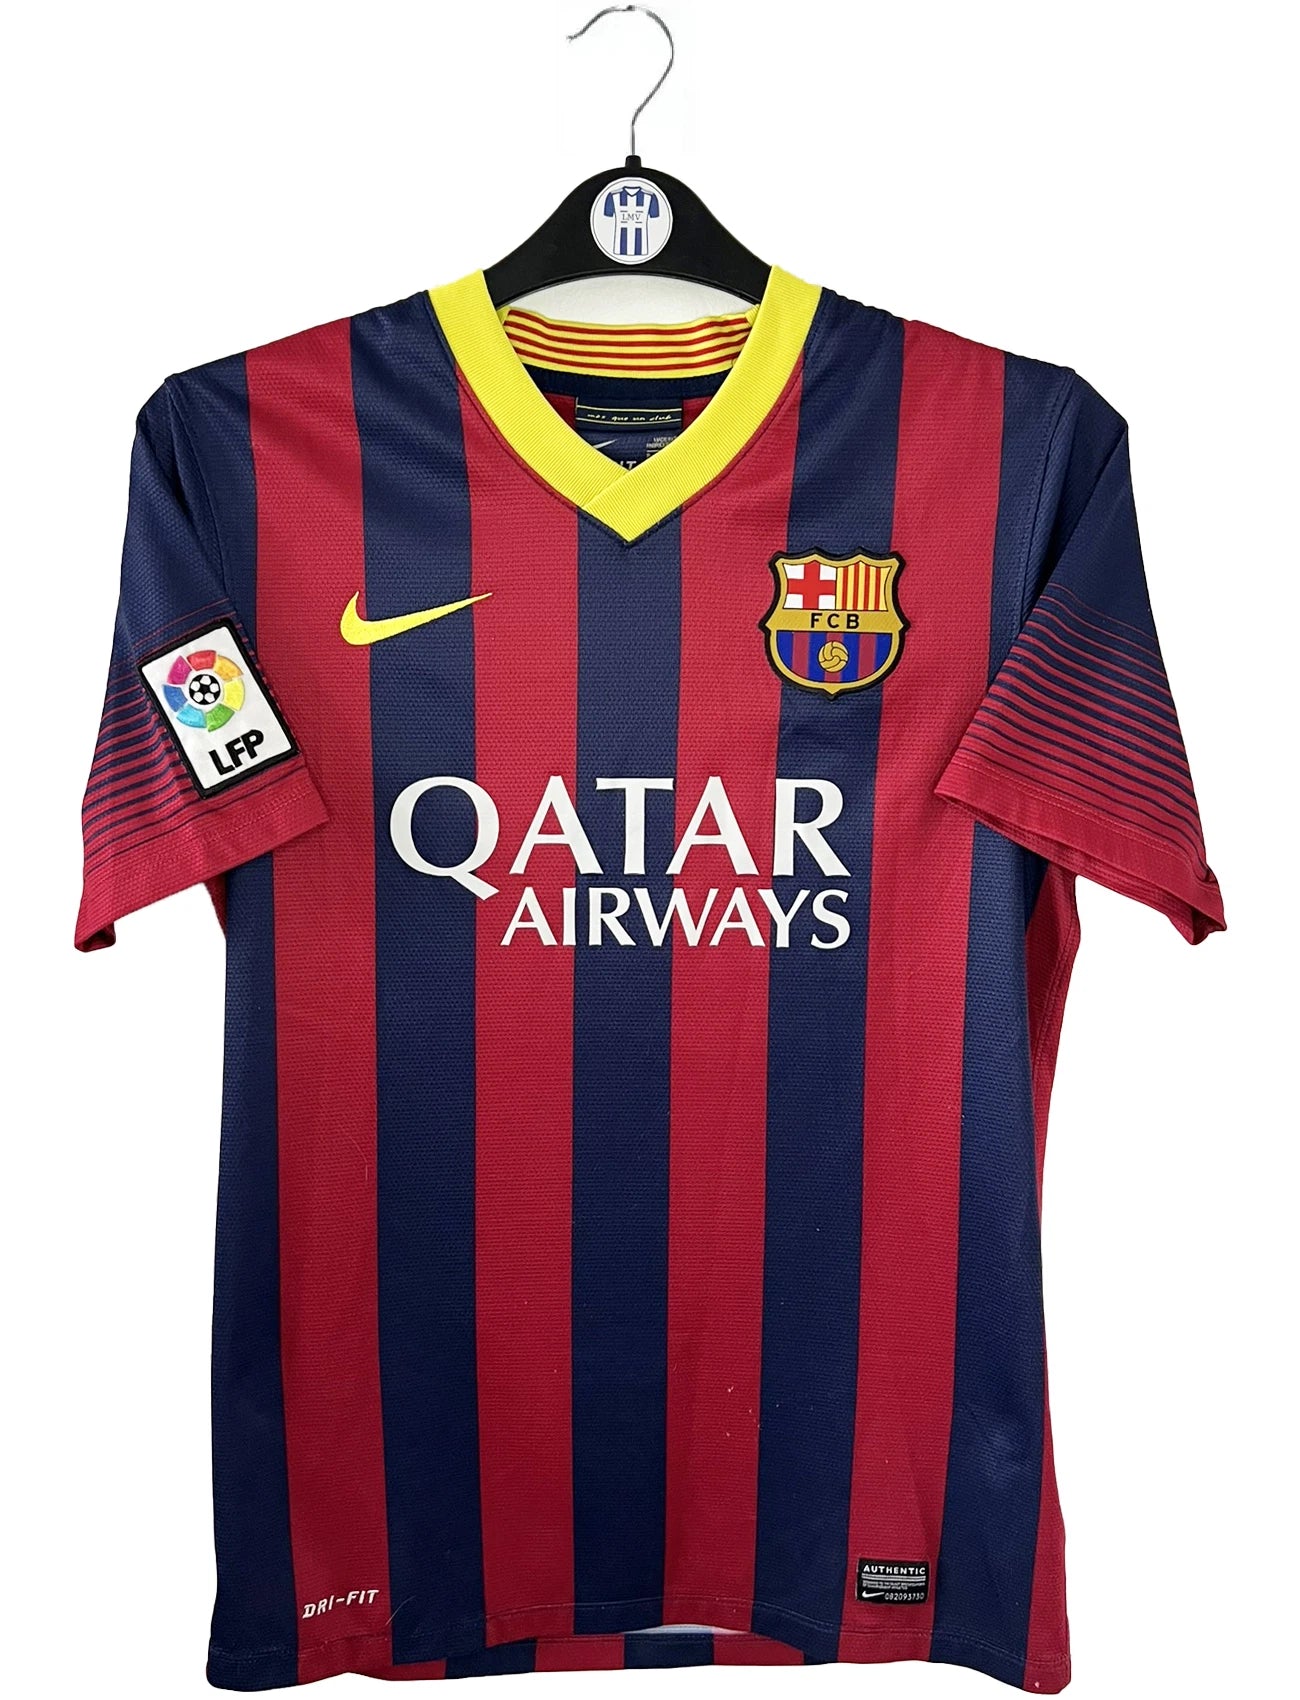 Maillot de foot vintage domicile du FC Barcelone de la saison 2013/14. Le maillot est de couleur rouge et bleu. On peut retrouver l'équipementier nike et le sponsor Qatar Airways. Le maillot est floqué du numéro 11 Neymar. Ils s'agit d'un maillot authentique comportant les numéros 532822-413